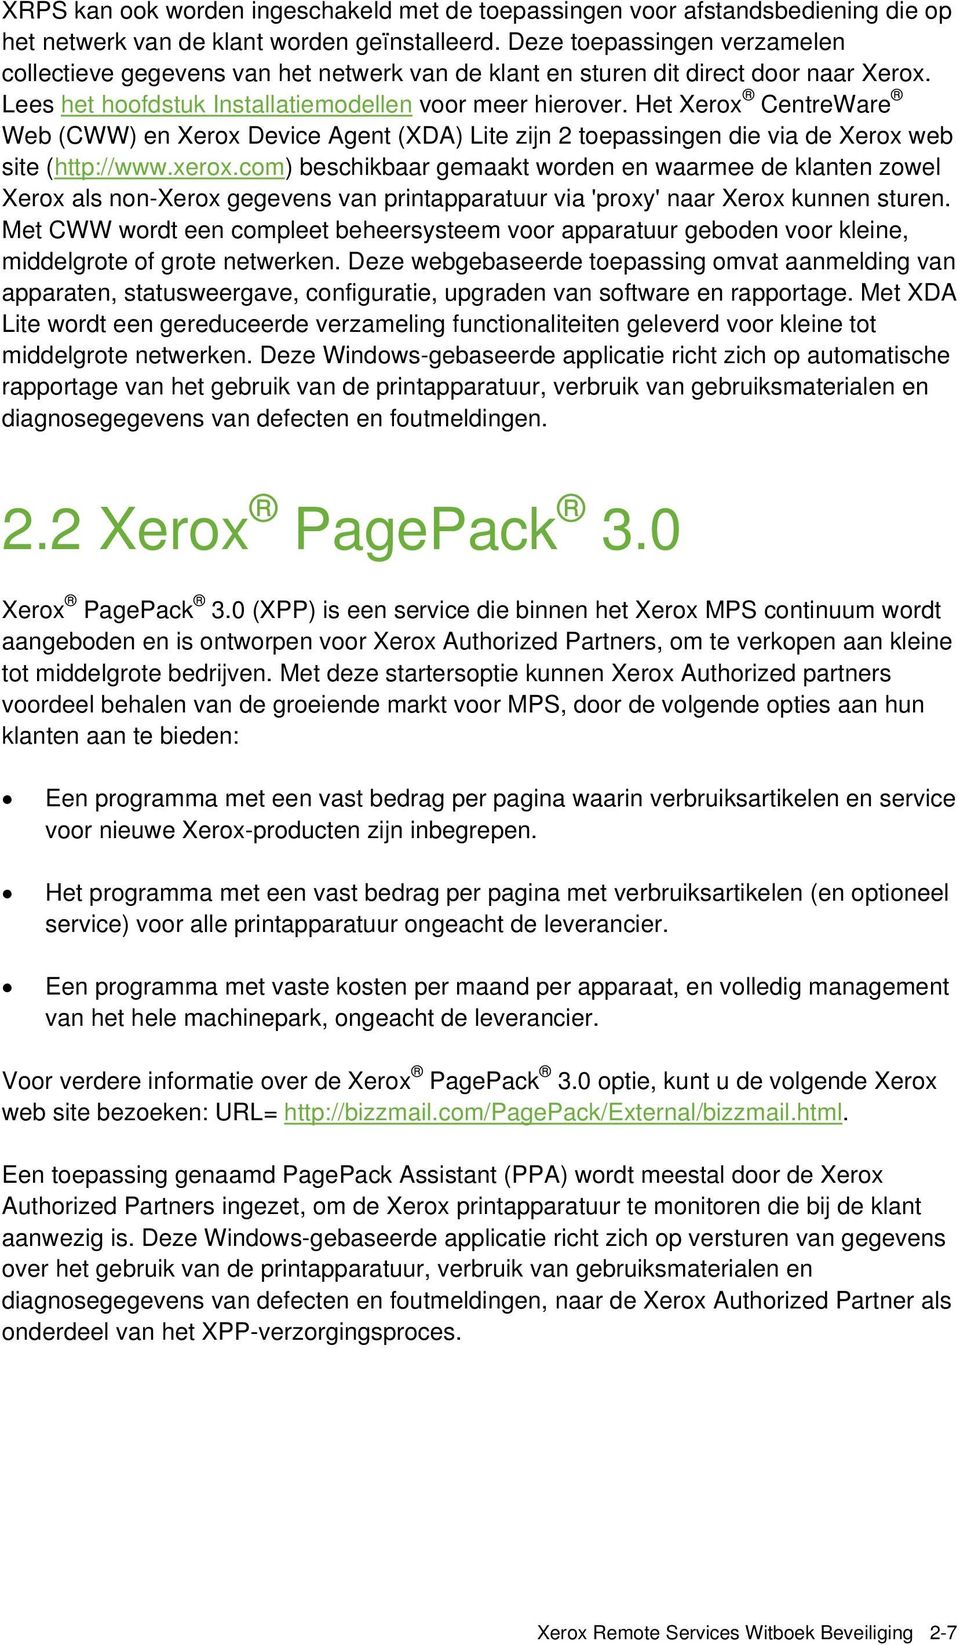 Het Xerox CentreWare Web (CWW) en Xerox Device Agent (XDA) Lite zijn 2 toepassingen die via de Xerox web site (http://www.xerox.